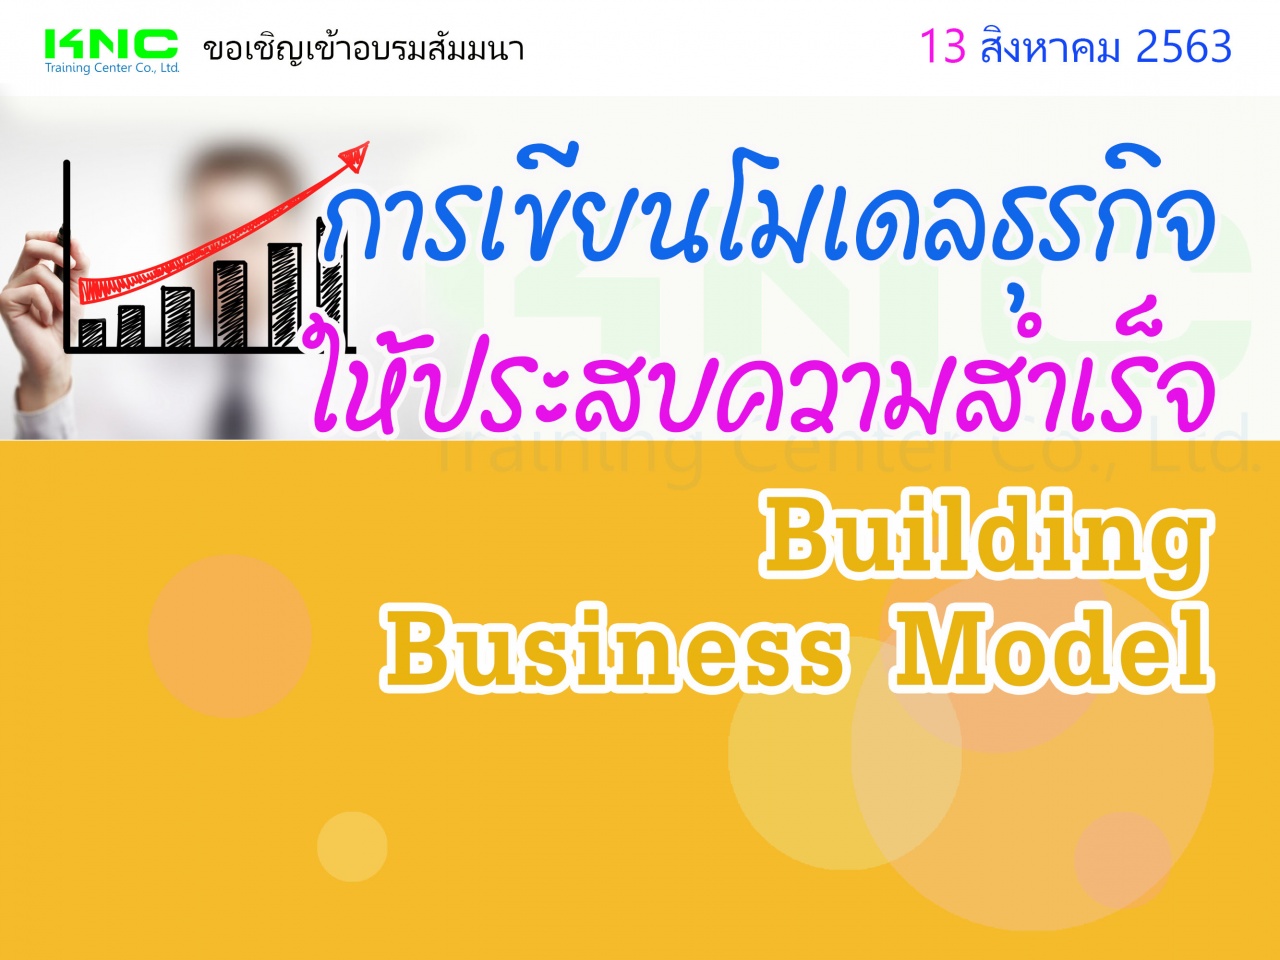 การเขียนโมเดลธุรกิจให้ประสบความสำเร็จ (Building Business Model)